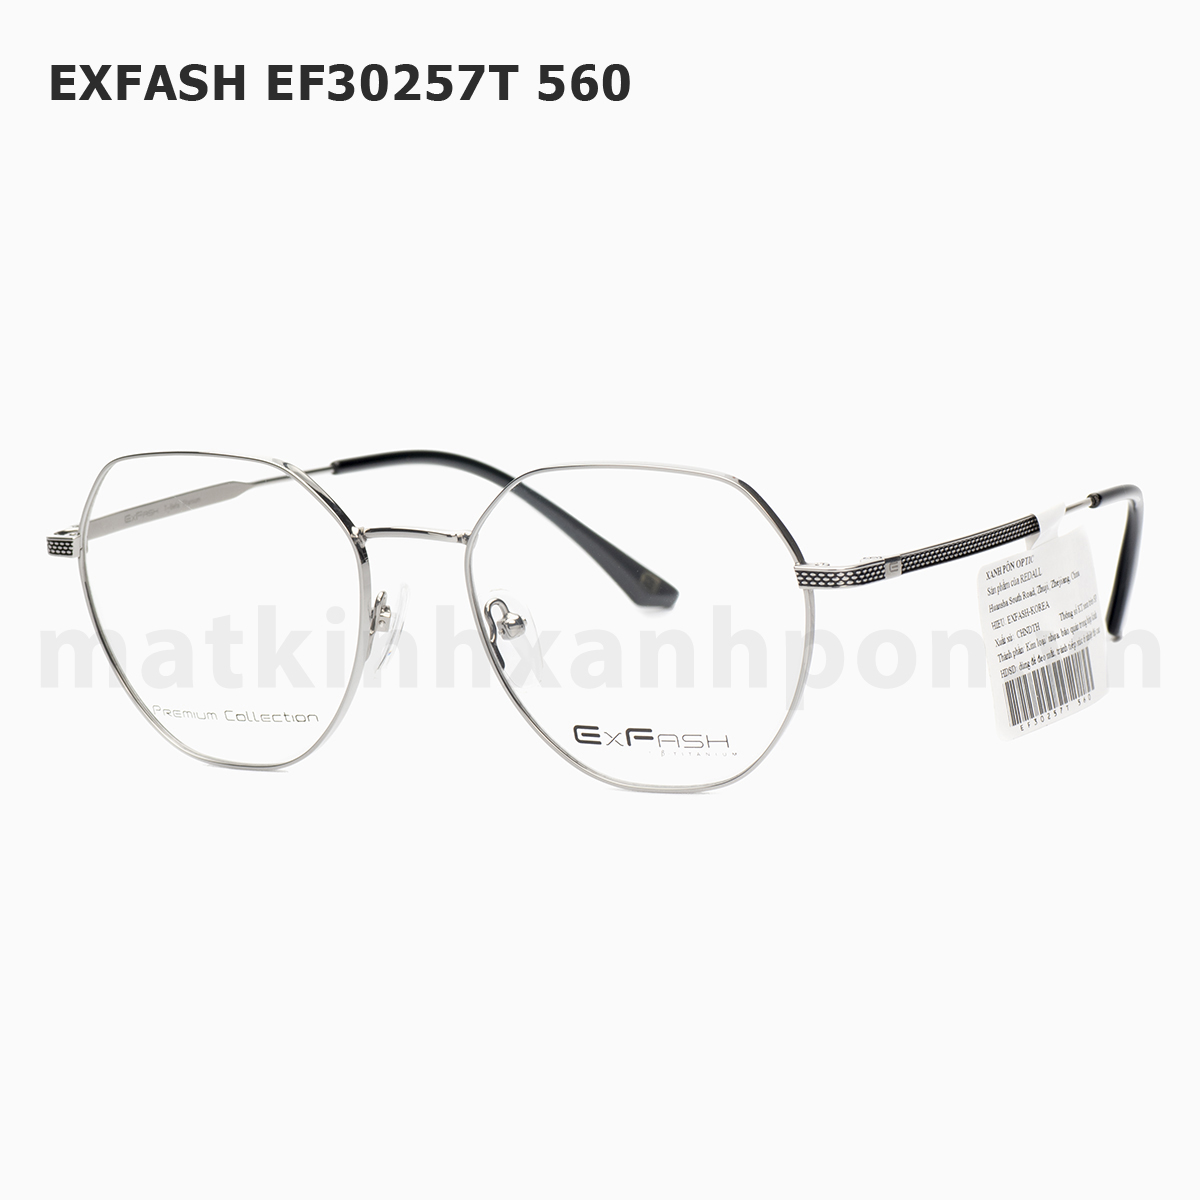 Exfash EF30257T 560